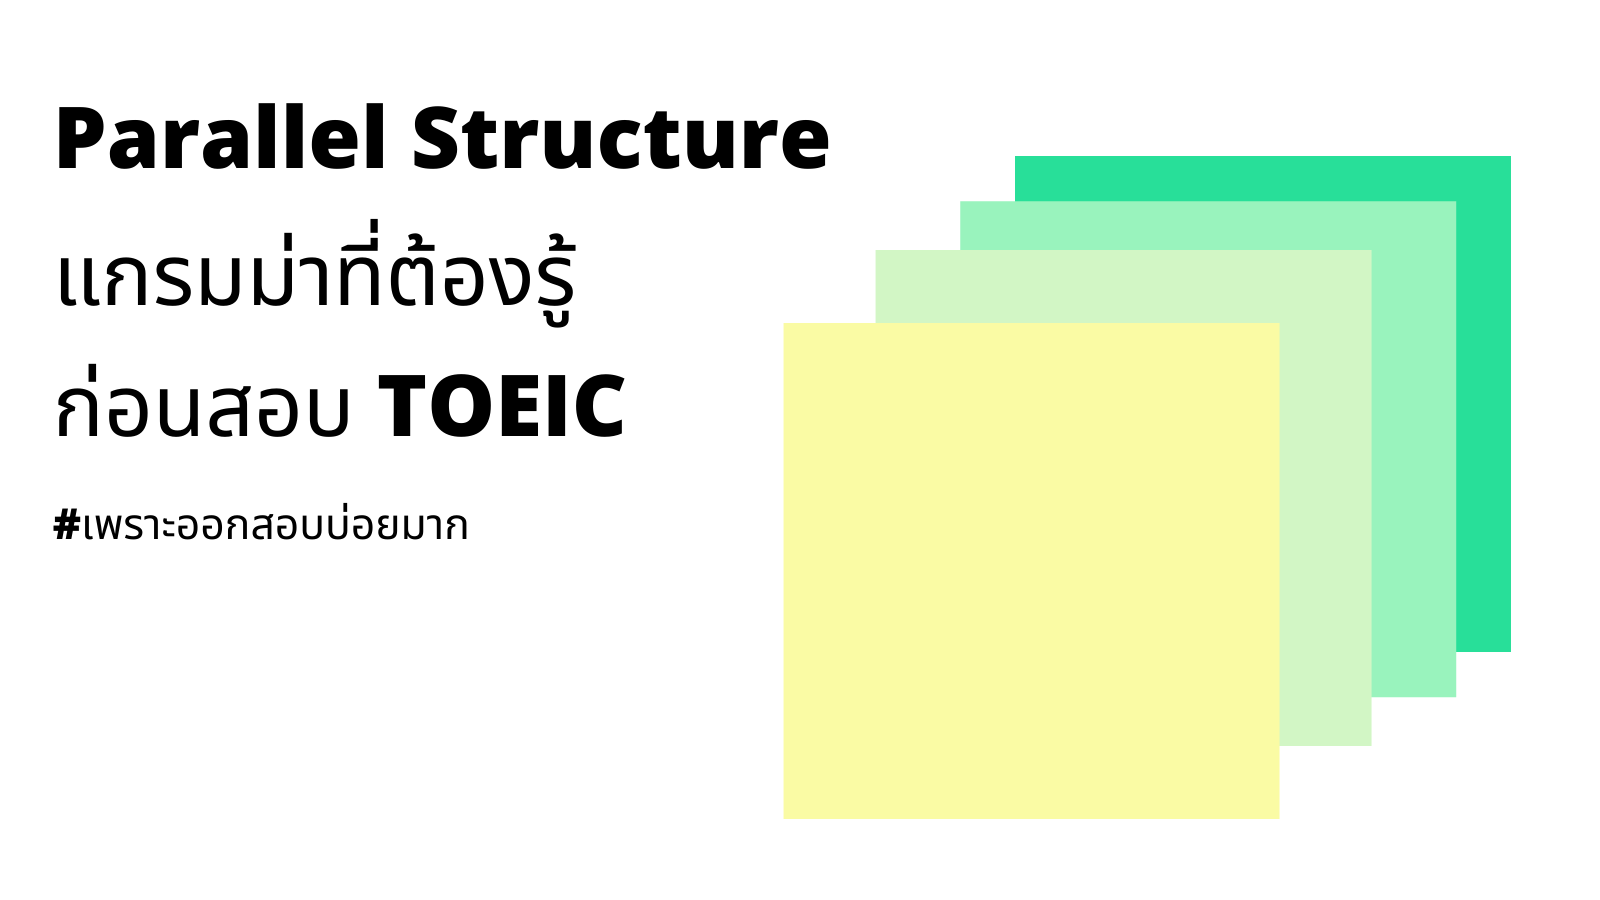 Parallel structure แกรมม่าที่ต้องรู้ ก่อนสอบ TOEIC